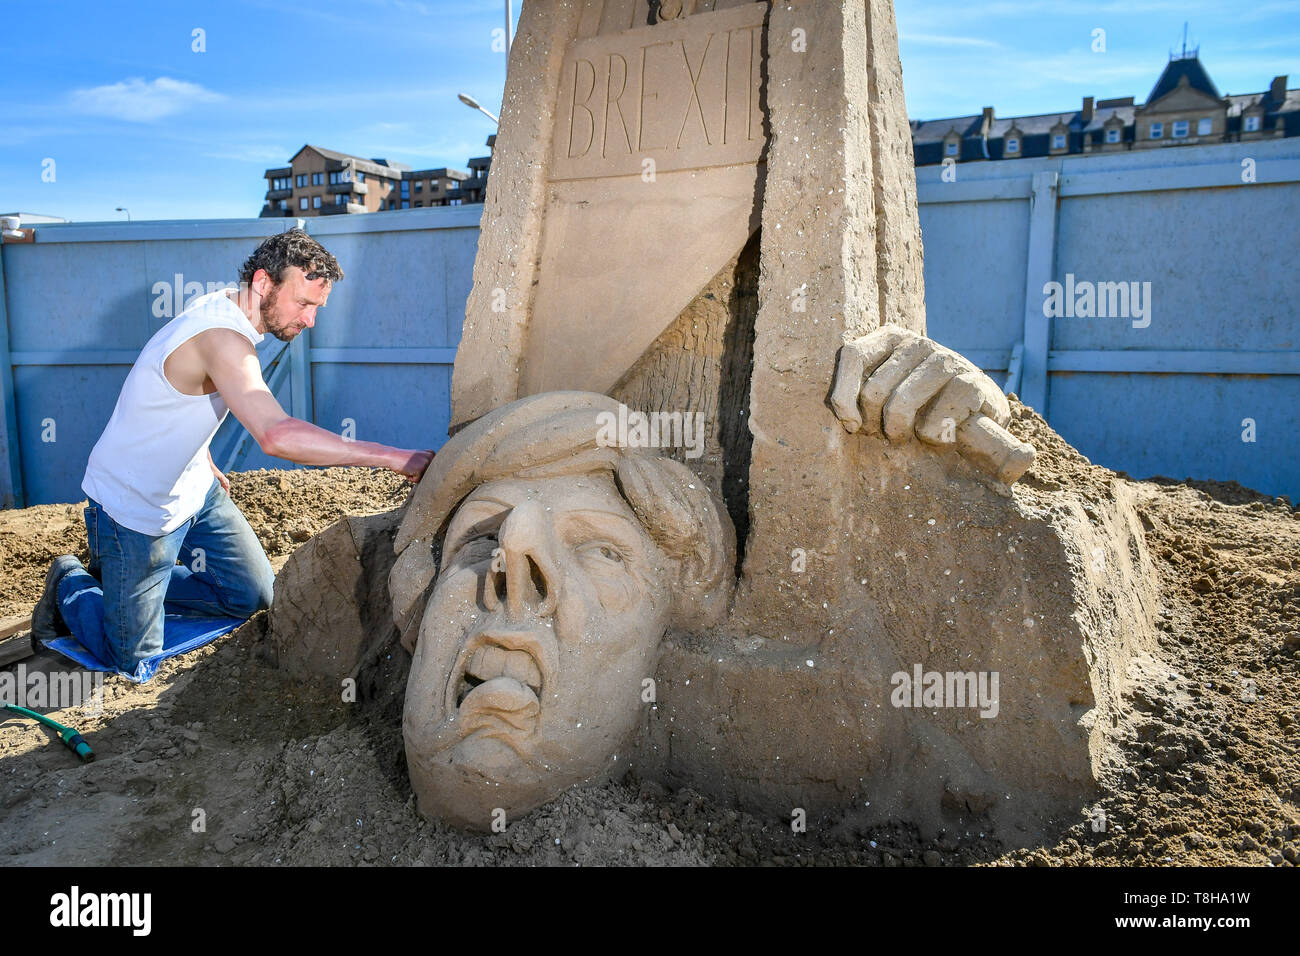 Artiste sculptures de sable Johannes Hogebrink travaille sur un Brexit sculpture à thème au Festival de sculptures de sable, Weston Weston-super-Mare, avec premier ministre Theresa peut réduire sa propre tête à l'aide d'une guillotine. Banque D'Images